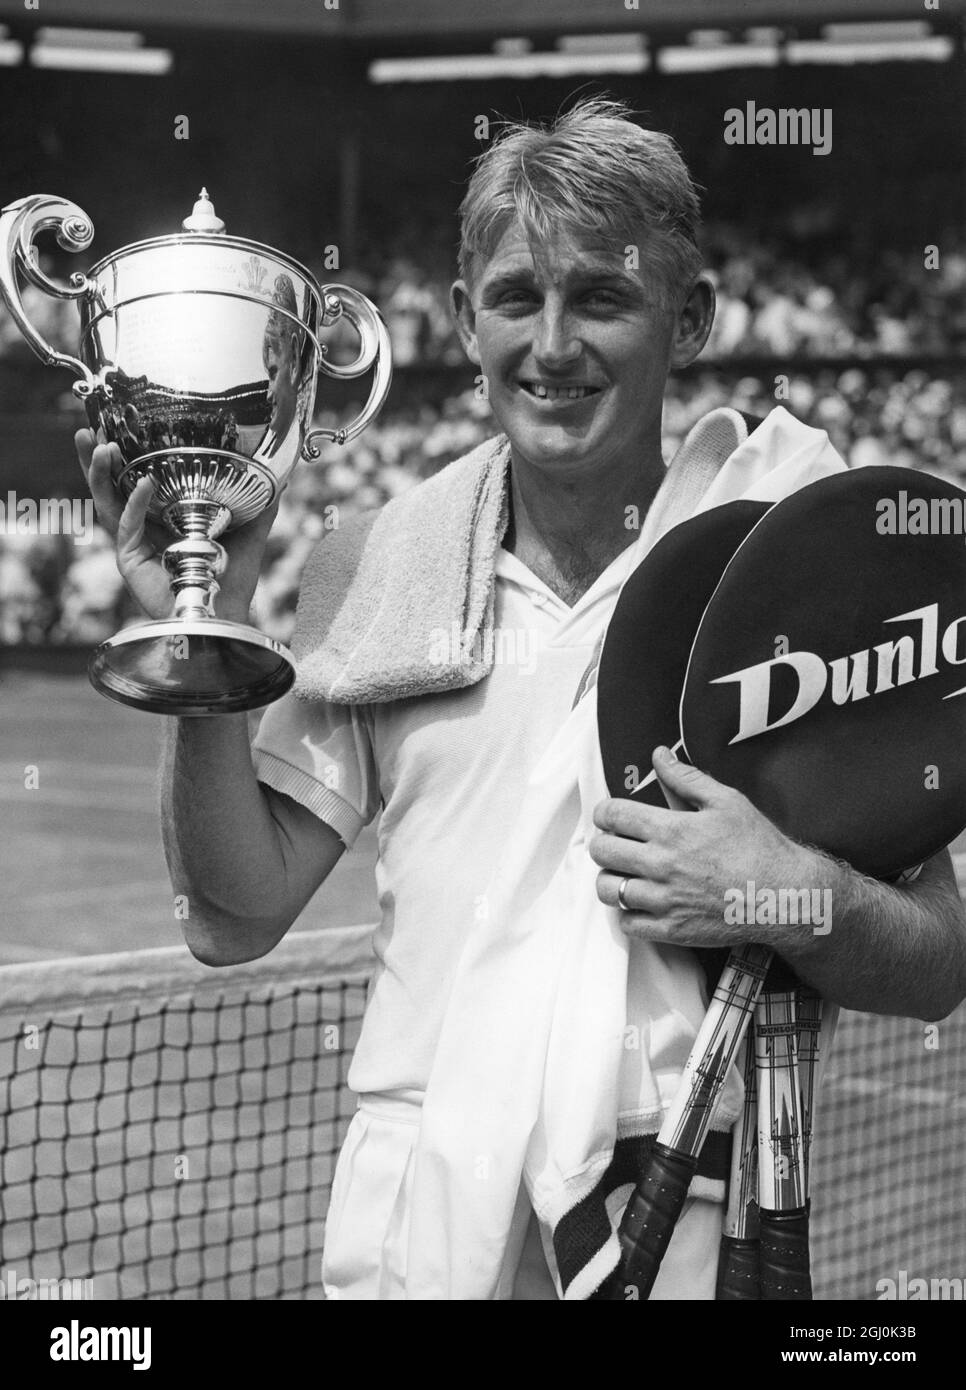 Lew Hoad (AUS) di 22 anni - vincitore della finale maschile dei singoli a Wimbledon il 5 luglio 1957. ©TopFoto *** Local Caption *** 1957 - L.A. Hoad Foto Stock